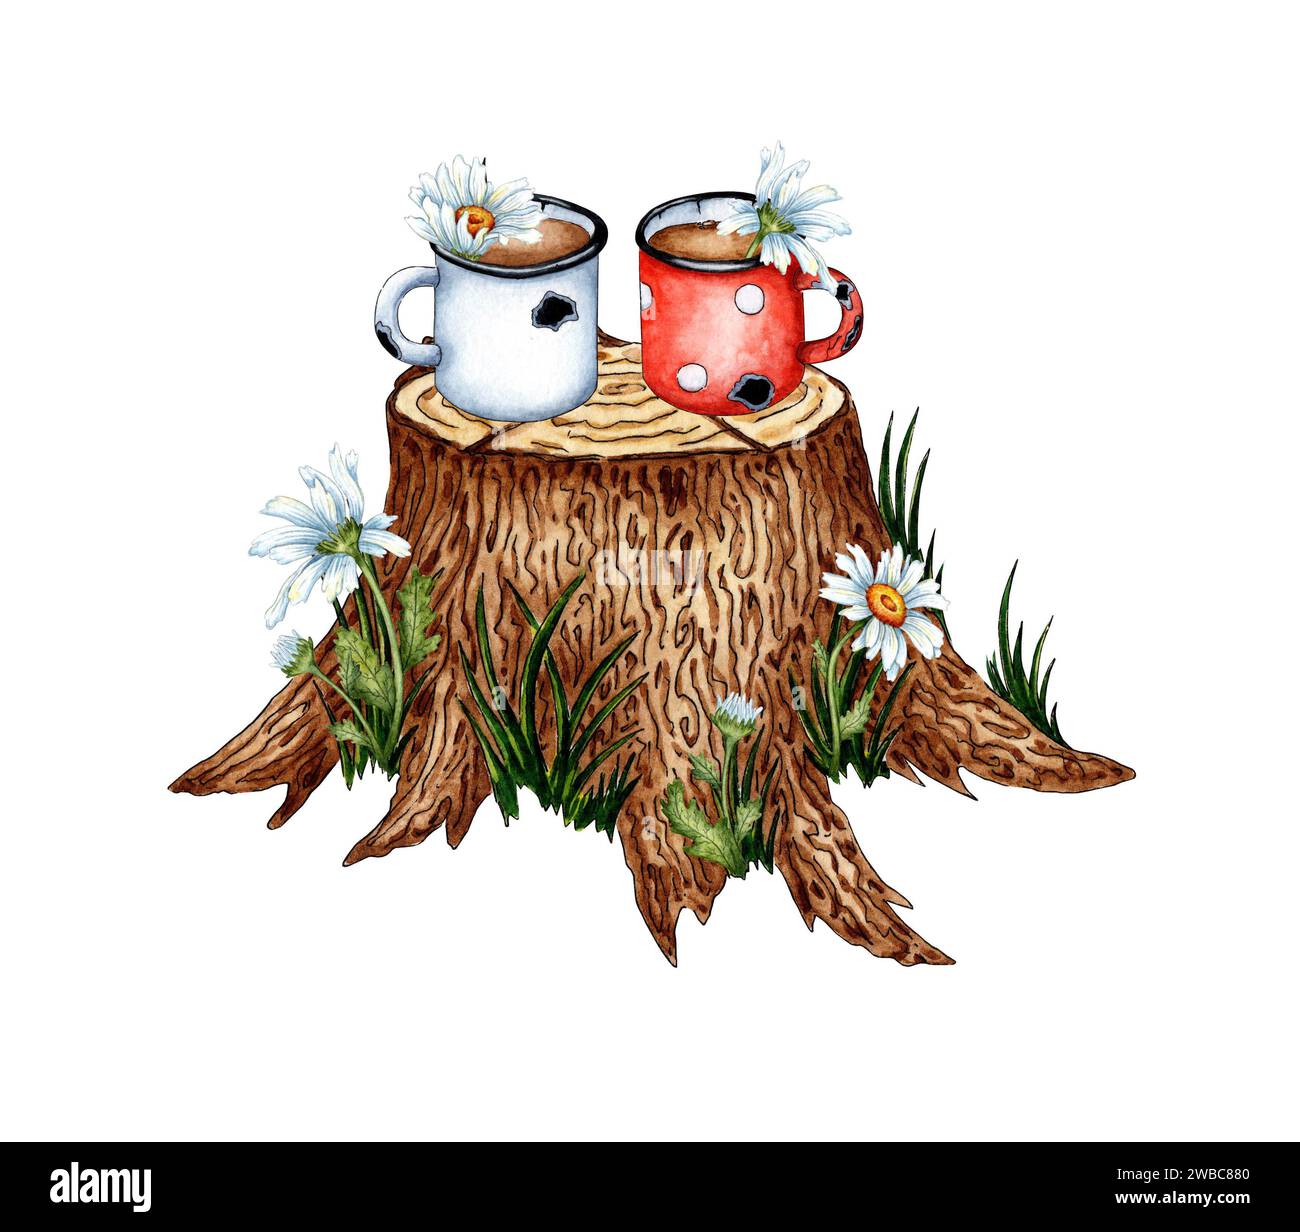 Illustration à l'aquarelle de tasses en émail avec du thé et de la camomille debout sur une souche d'arbre. Camping, arrêt sur une longue randonnée, déjeuner. Isolé sur un fond blanc Banque D'Images